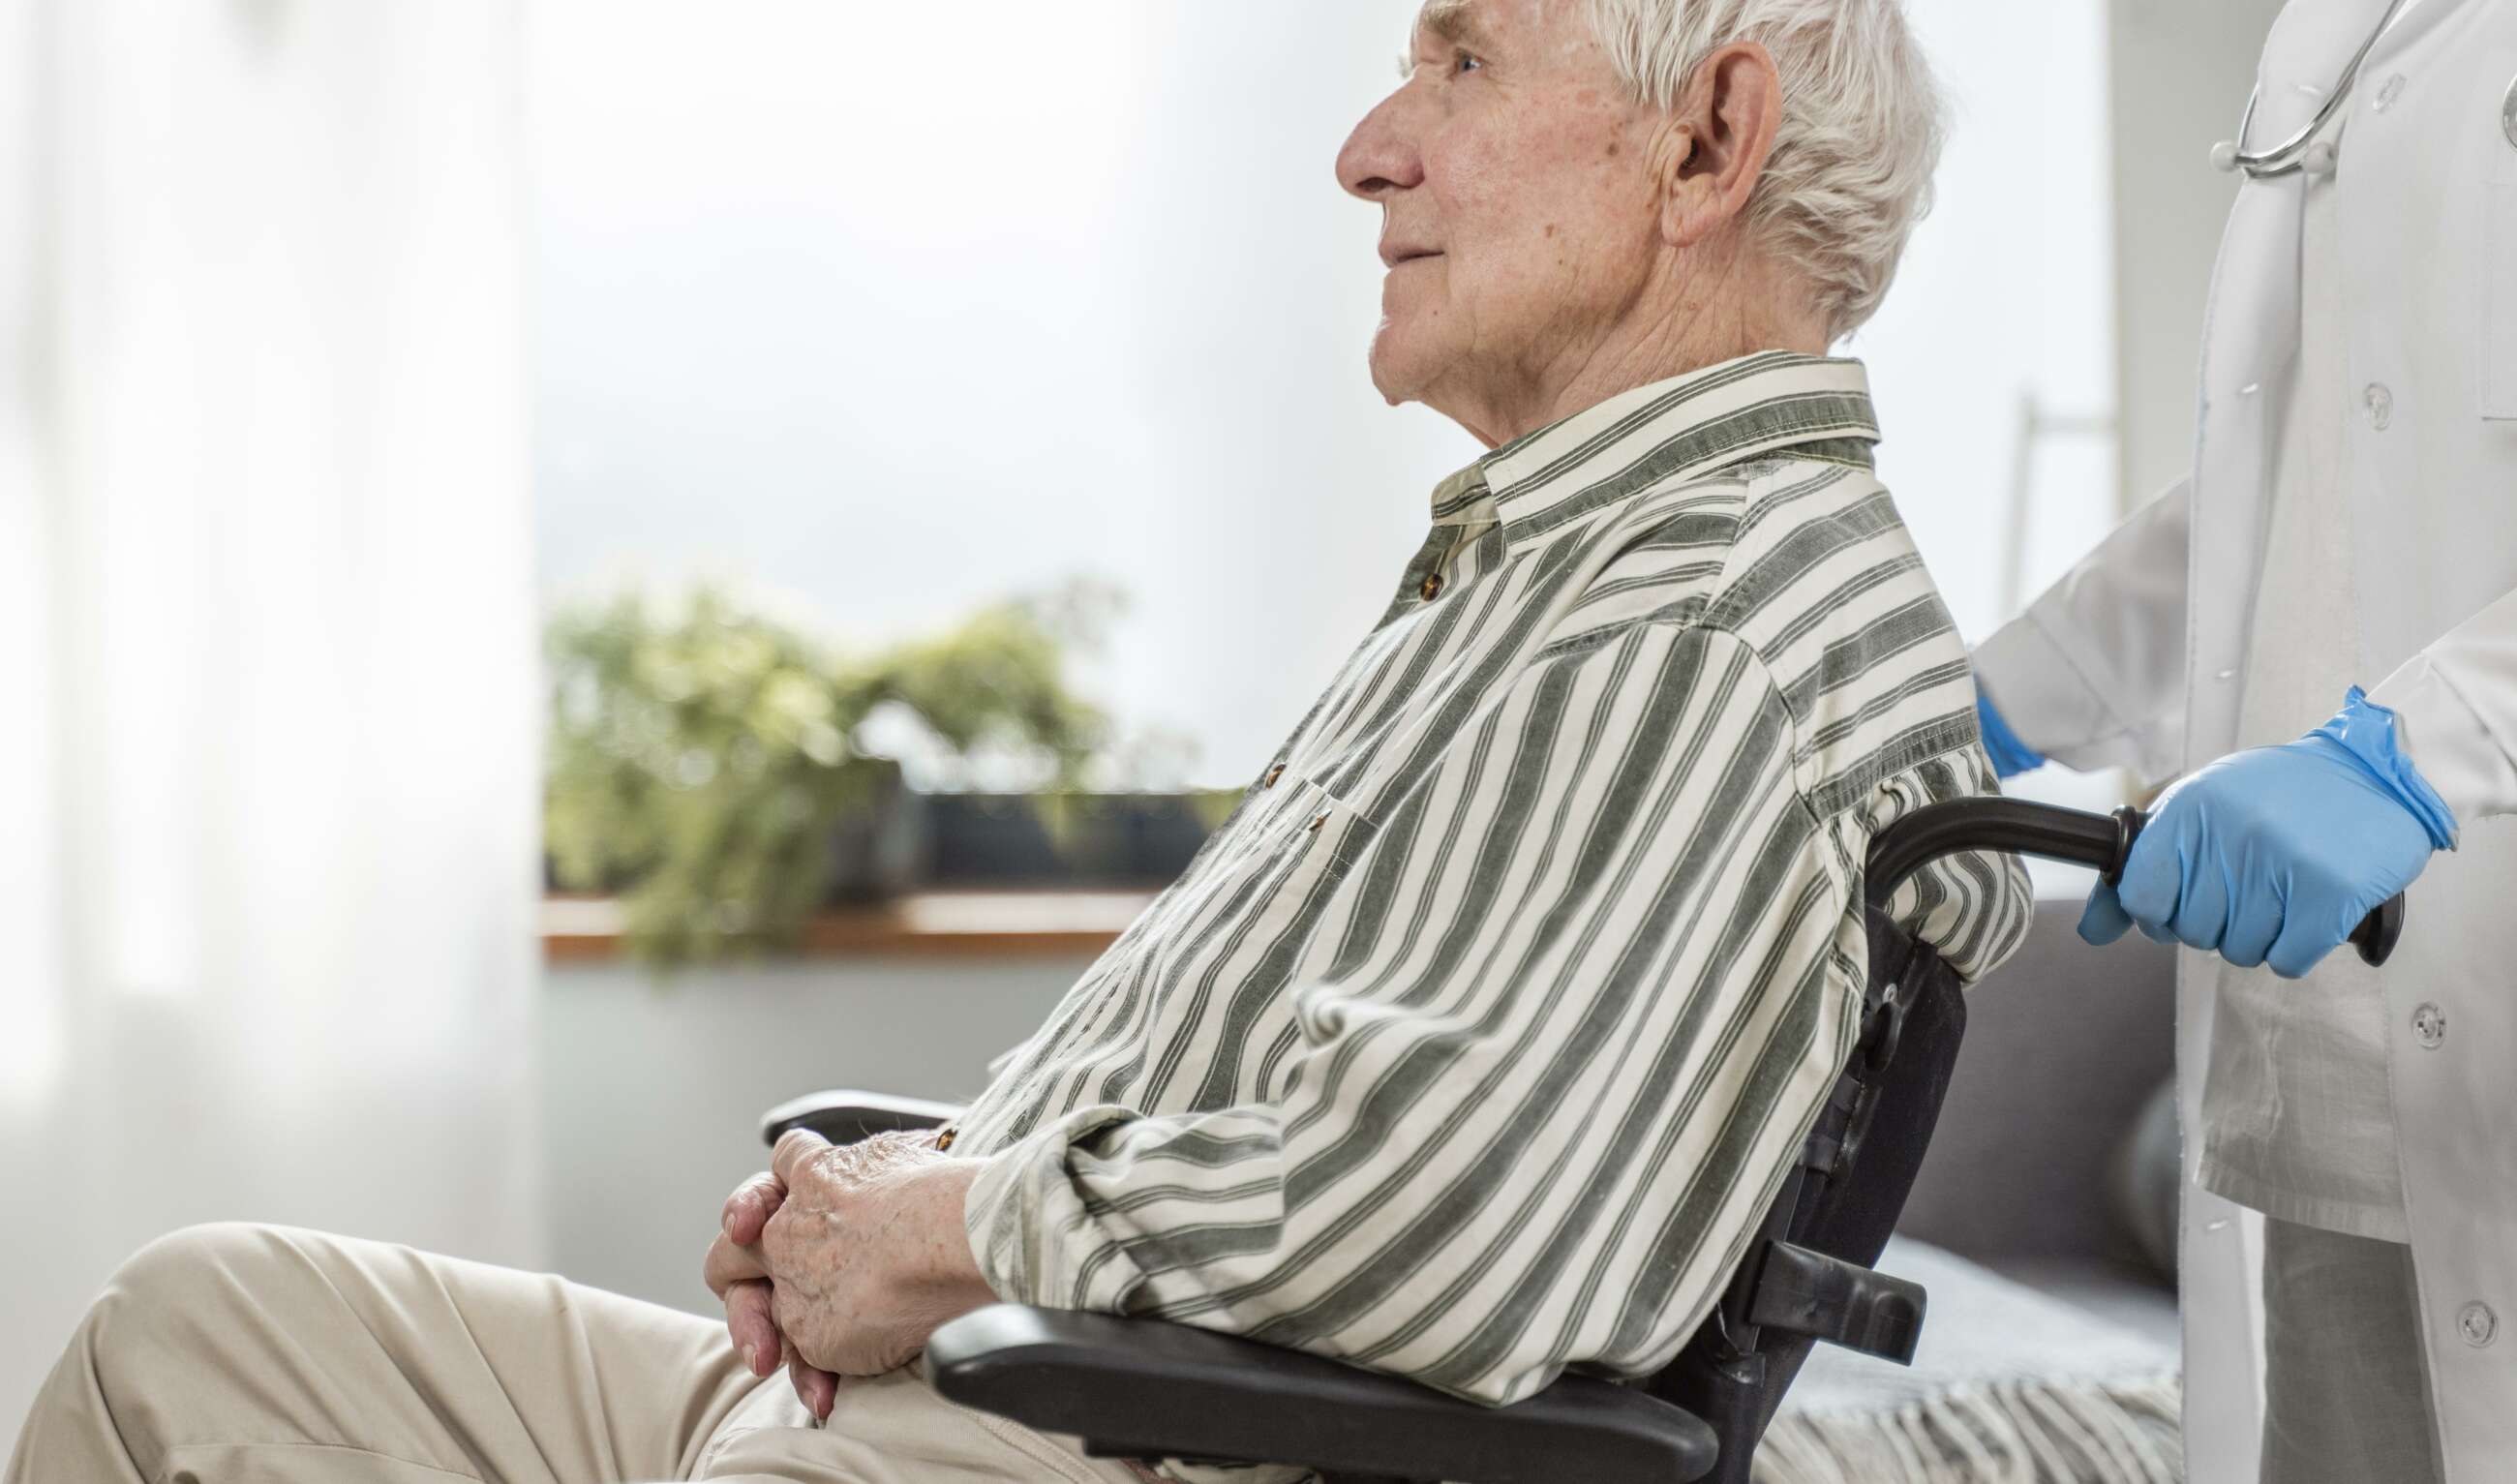 Adulto mayor sentado en una silla de ruedas con asistencia